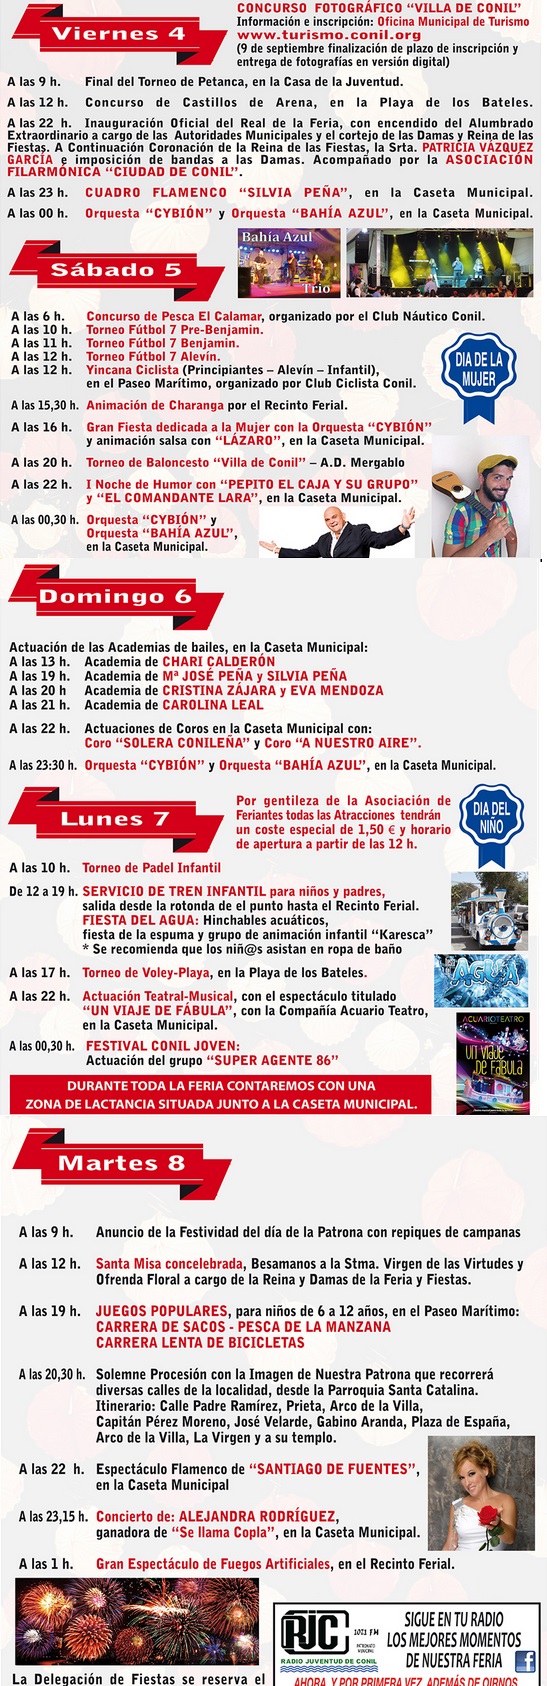 Programm Feria de Conil 2015